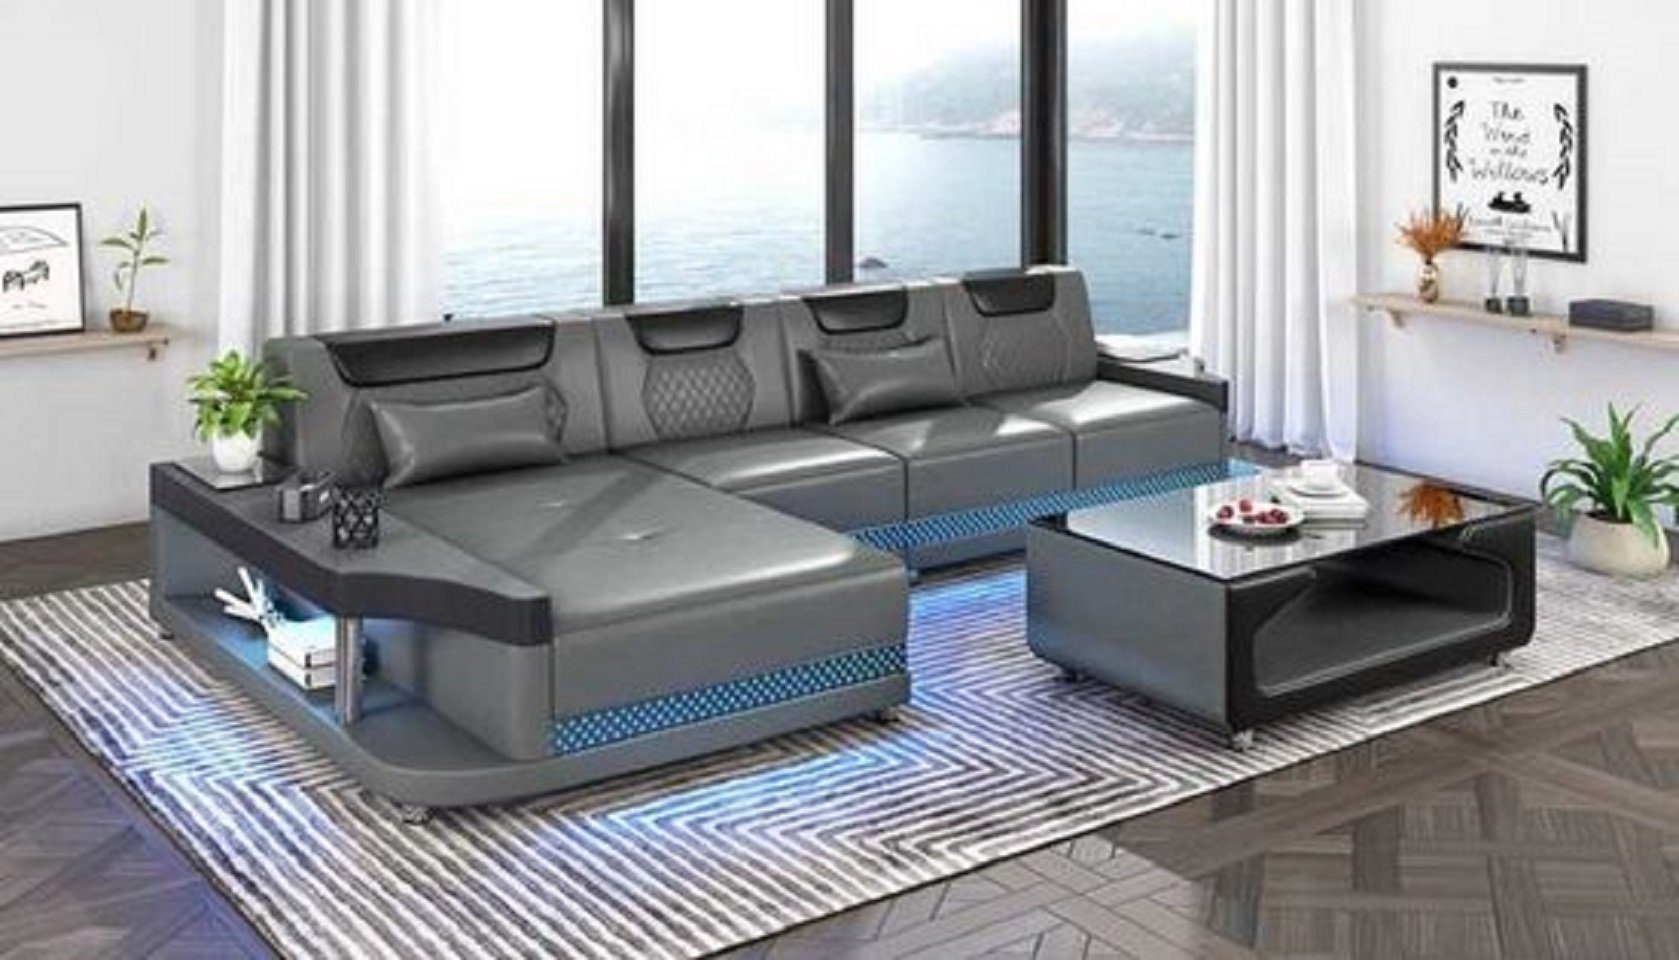 JVmoebel Ecksofa Schicker Ecksofa L Form Couch Sofa Grau Luxus Moderne Couchen, 3 Teile, Made in Europe Grau/Schwarz